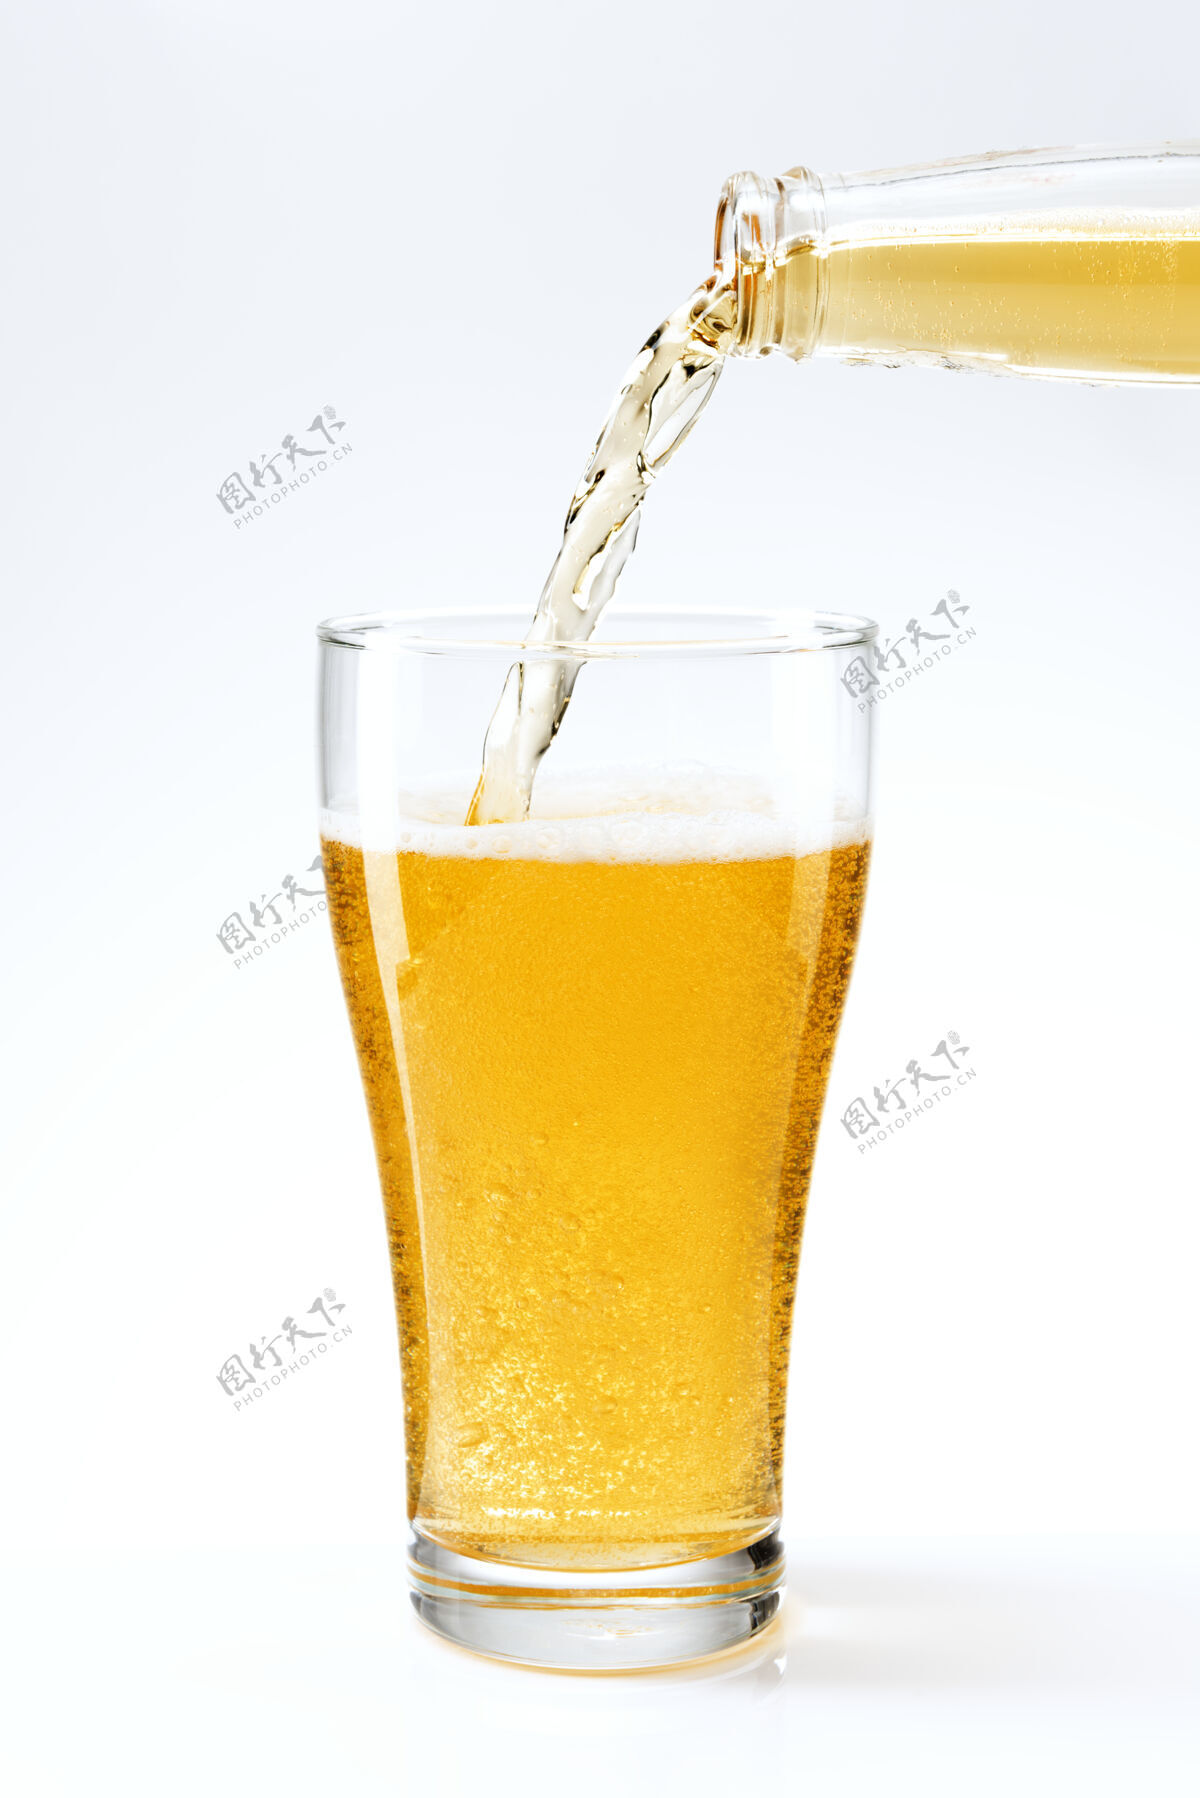 酒精饮料啤酒从啤酒瓶倒进玻璃杯滴水泡沫欢乐时光